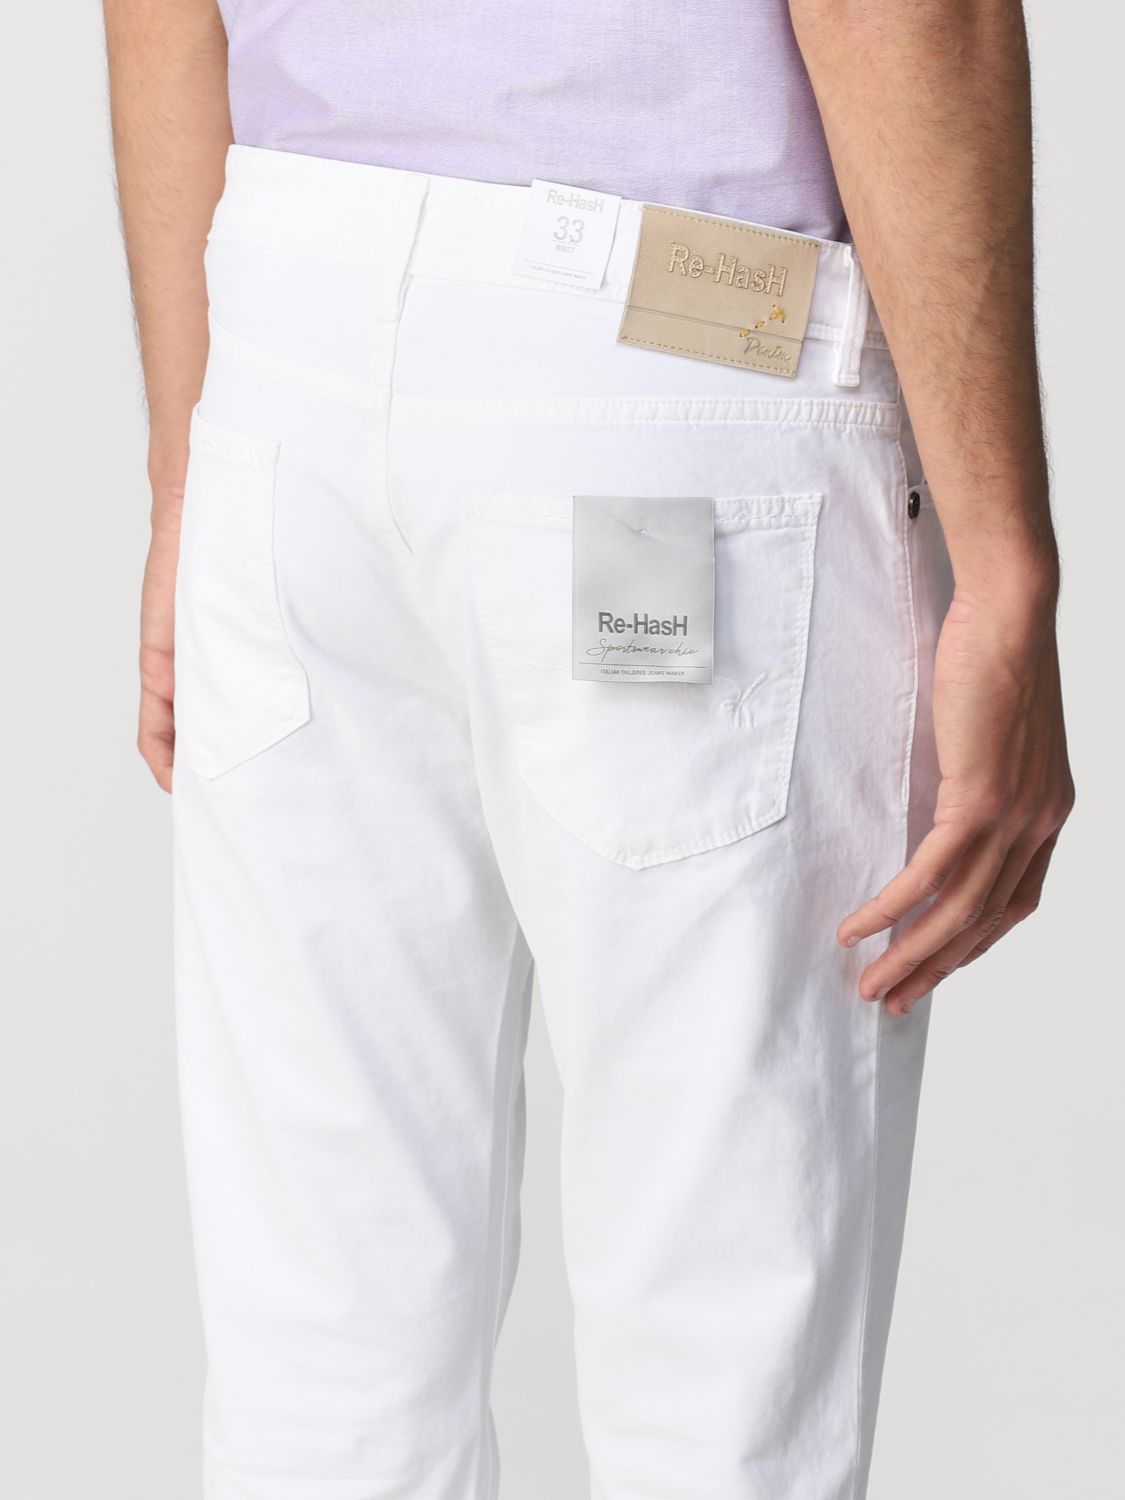 Pantalón Re-Hash: Pantalón hombre Re-hash blanco 3